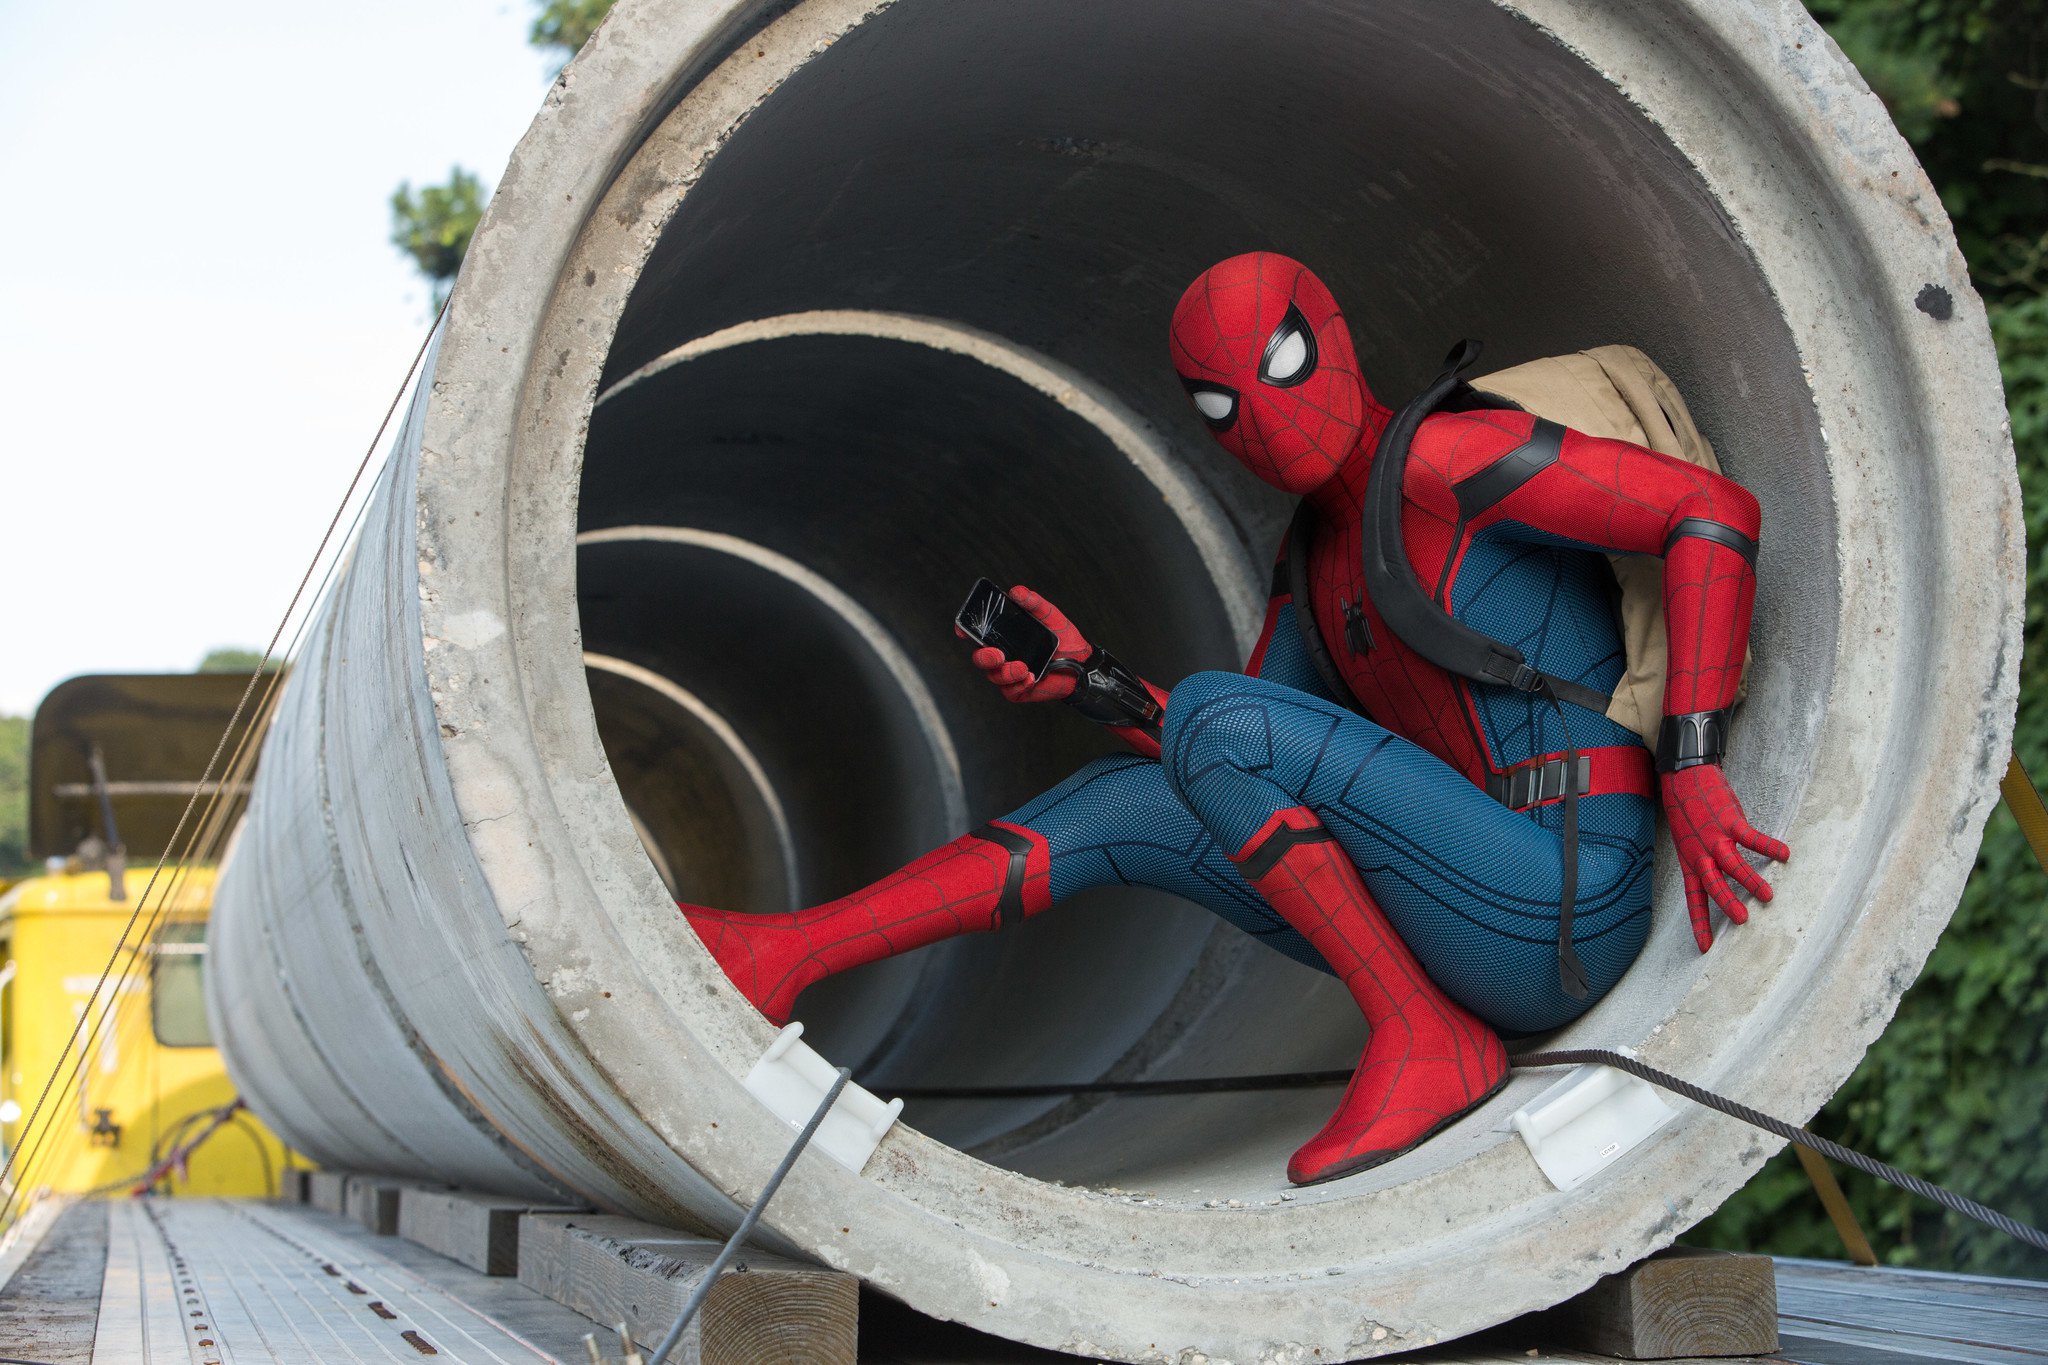 movie, spider man: homecoming, spider man